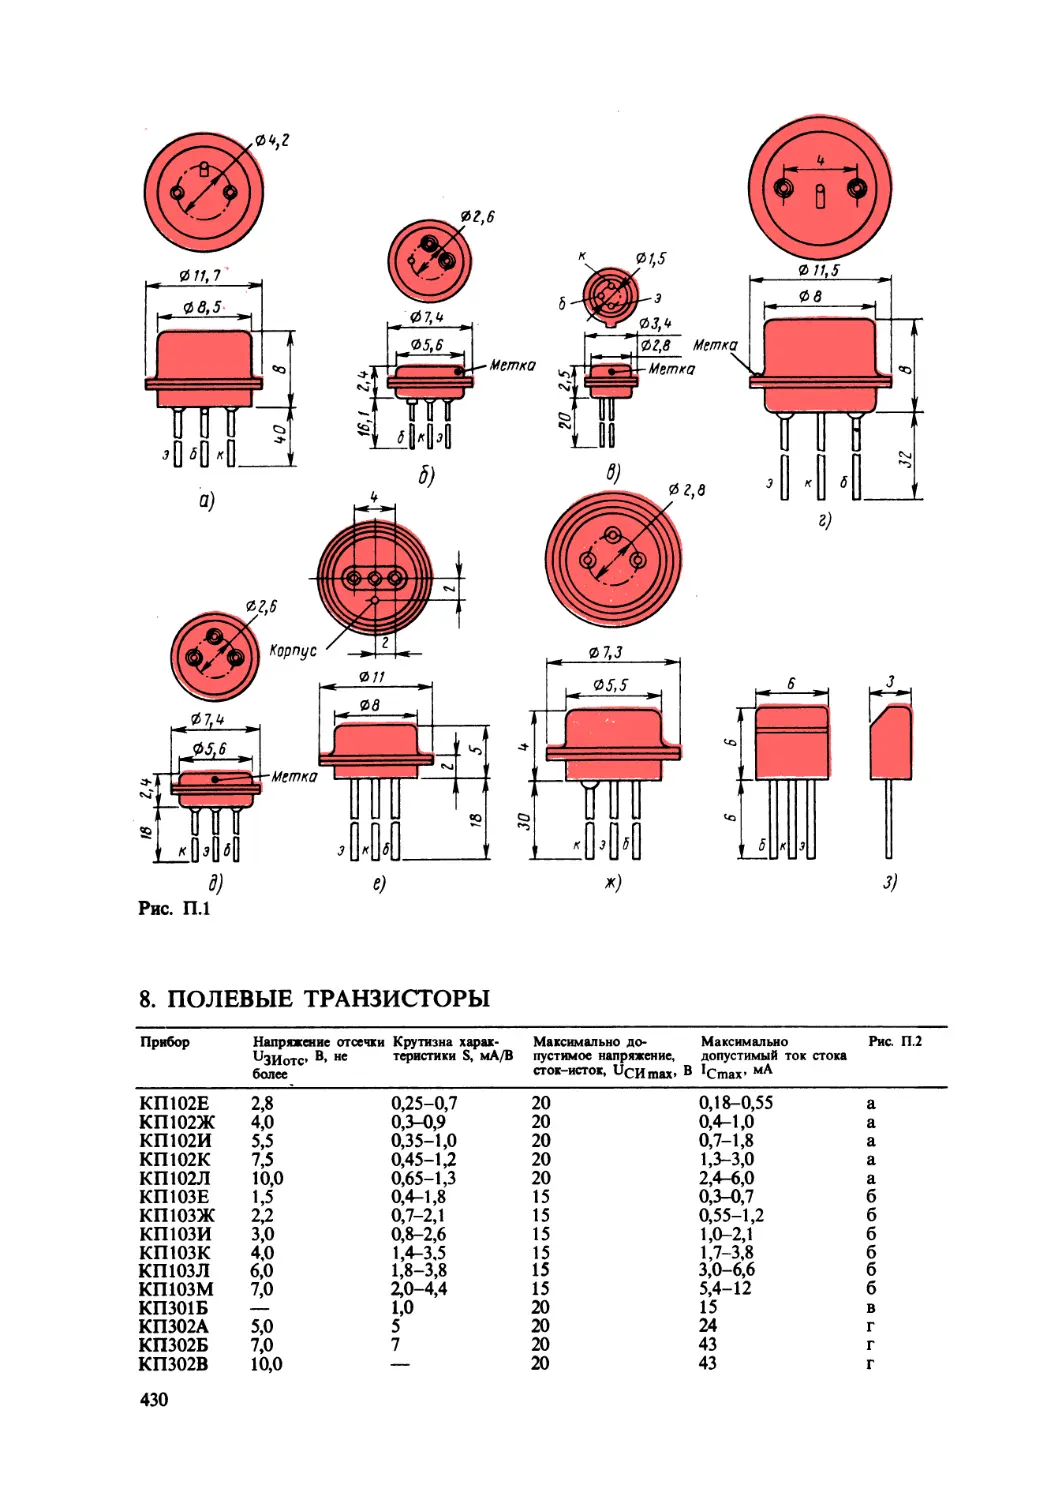 8. Полевые транзисторы